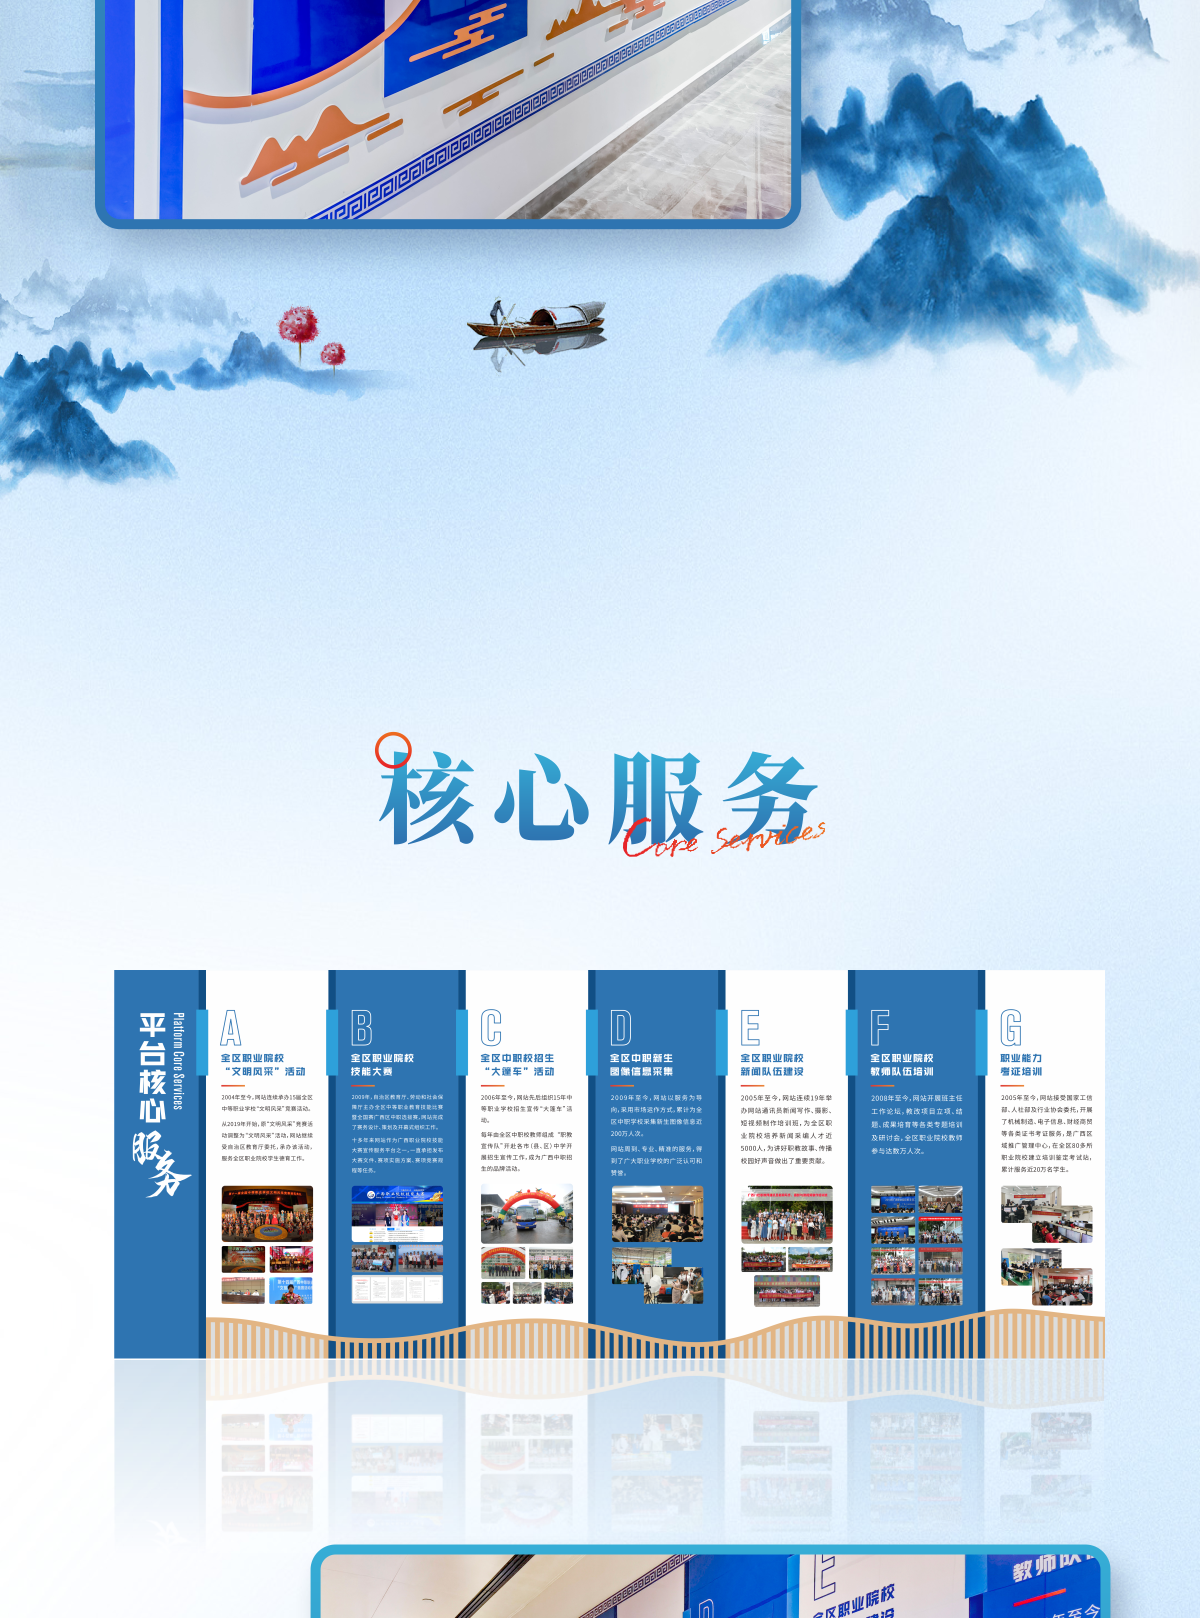 八桂职教网文化走廊企业文化墙设计制作_05.png